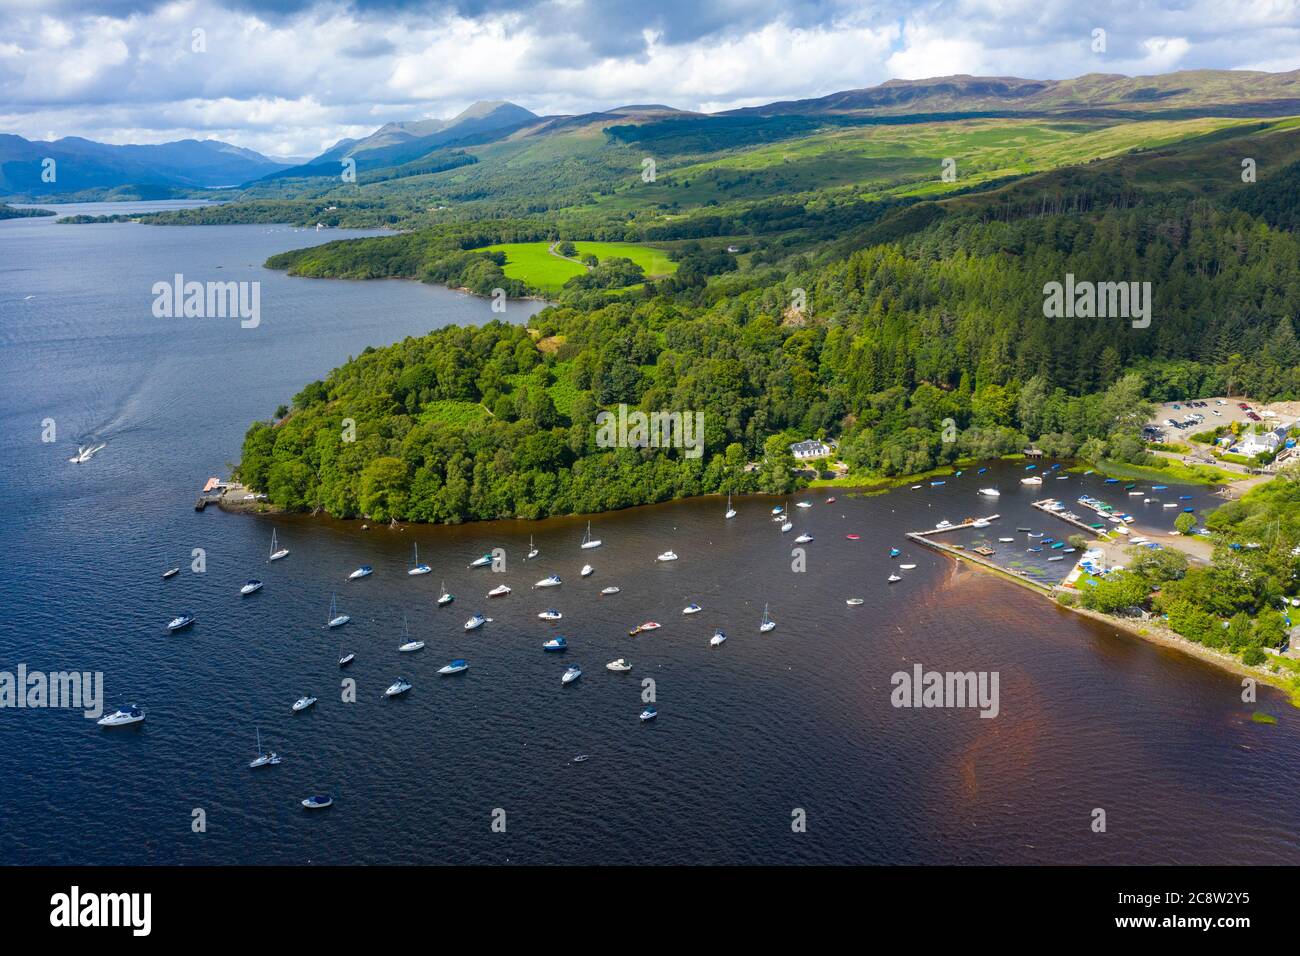 Vue aérienne du village de Balmaha sur les rives du Loch Lomond dans le Loch Lomond et du parc national des Trossachs, Écosse, Royaume-Uni Banque D'Images